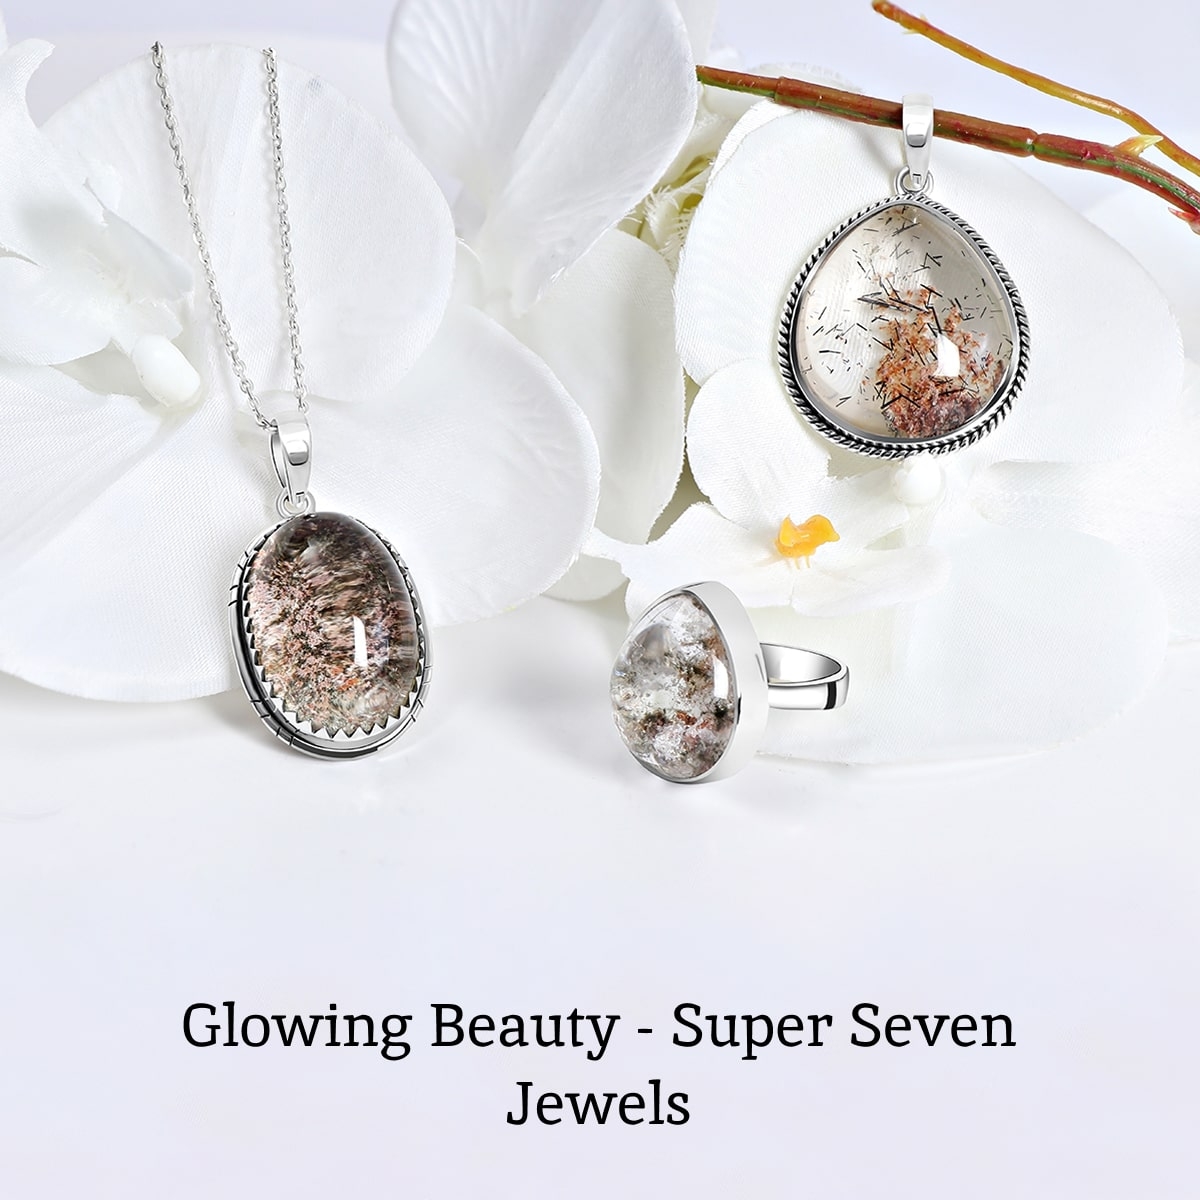 Super Seven Jewelry